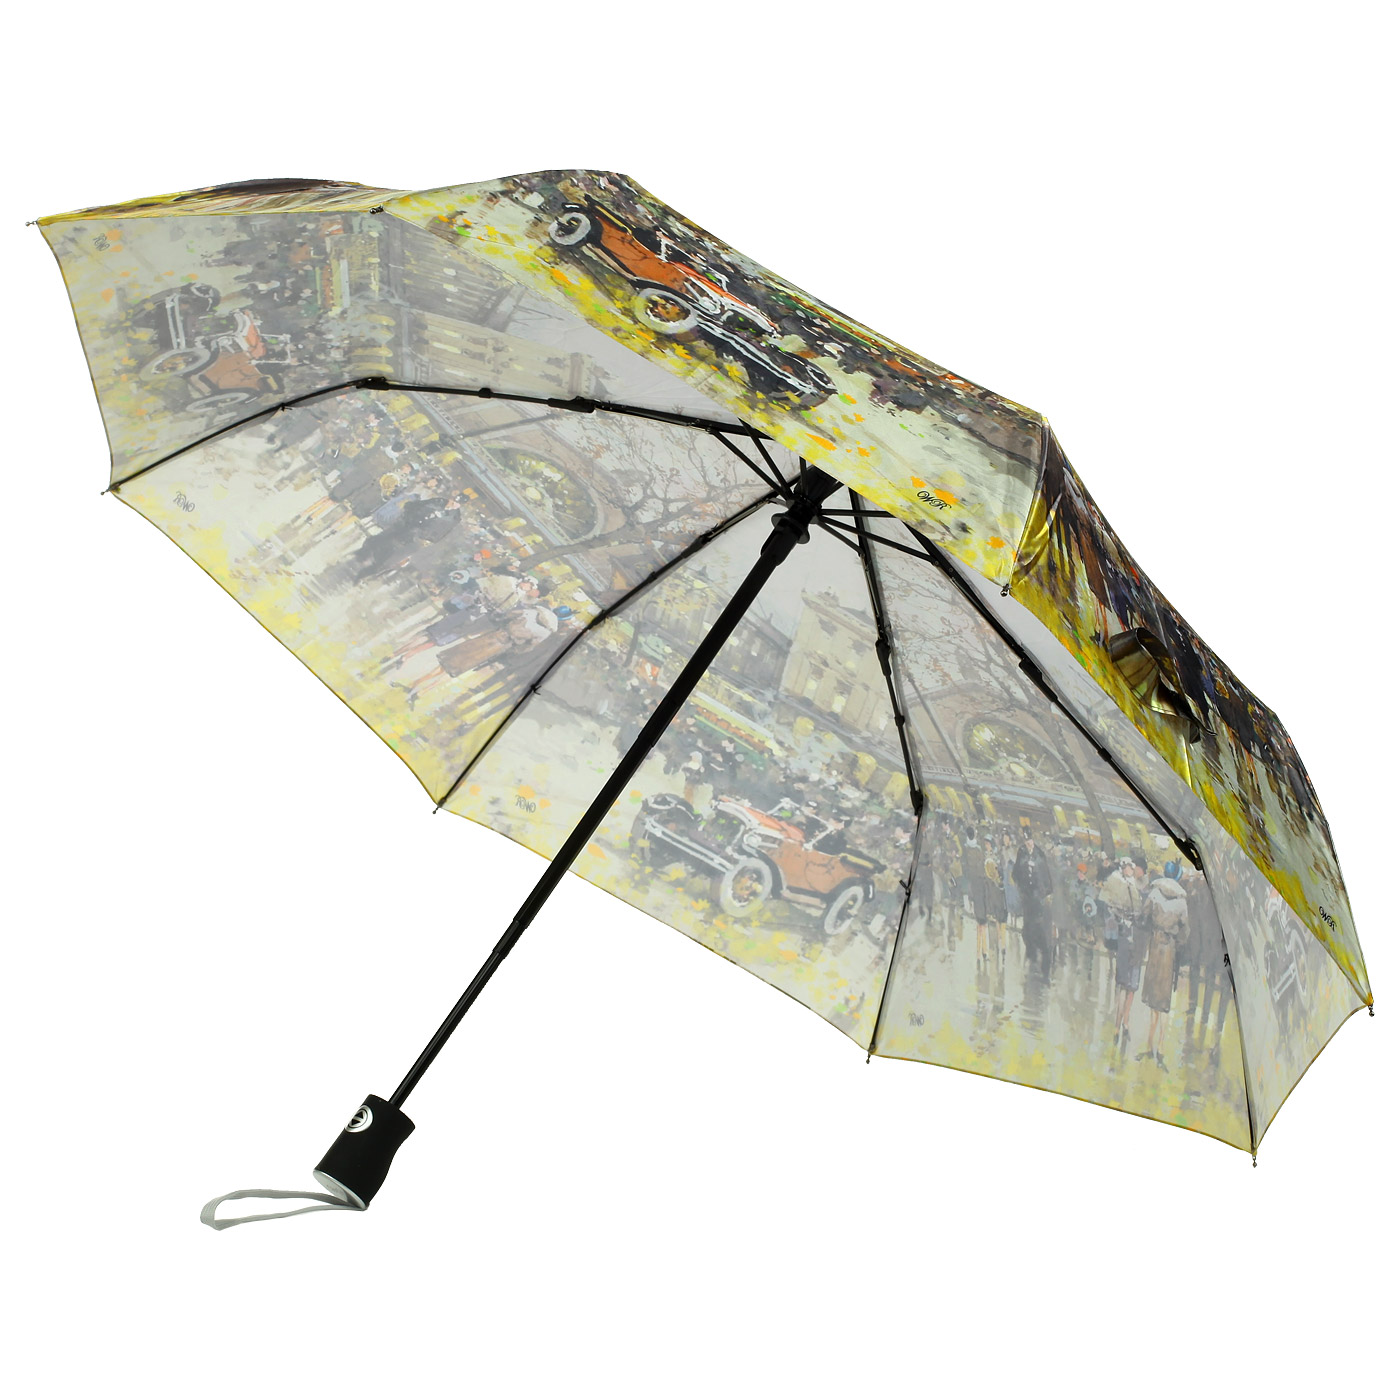 Зонтик спб. 0463-351-0020 Зонт штиль. Raindrops зонт. Дешевый зонтик. Зонты СПБ.